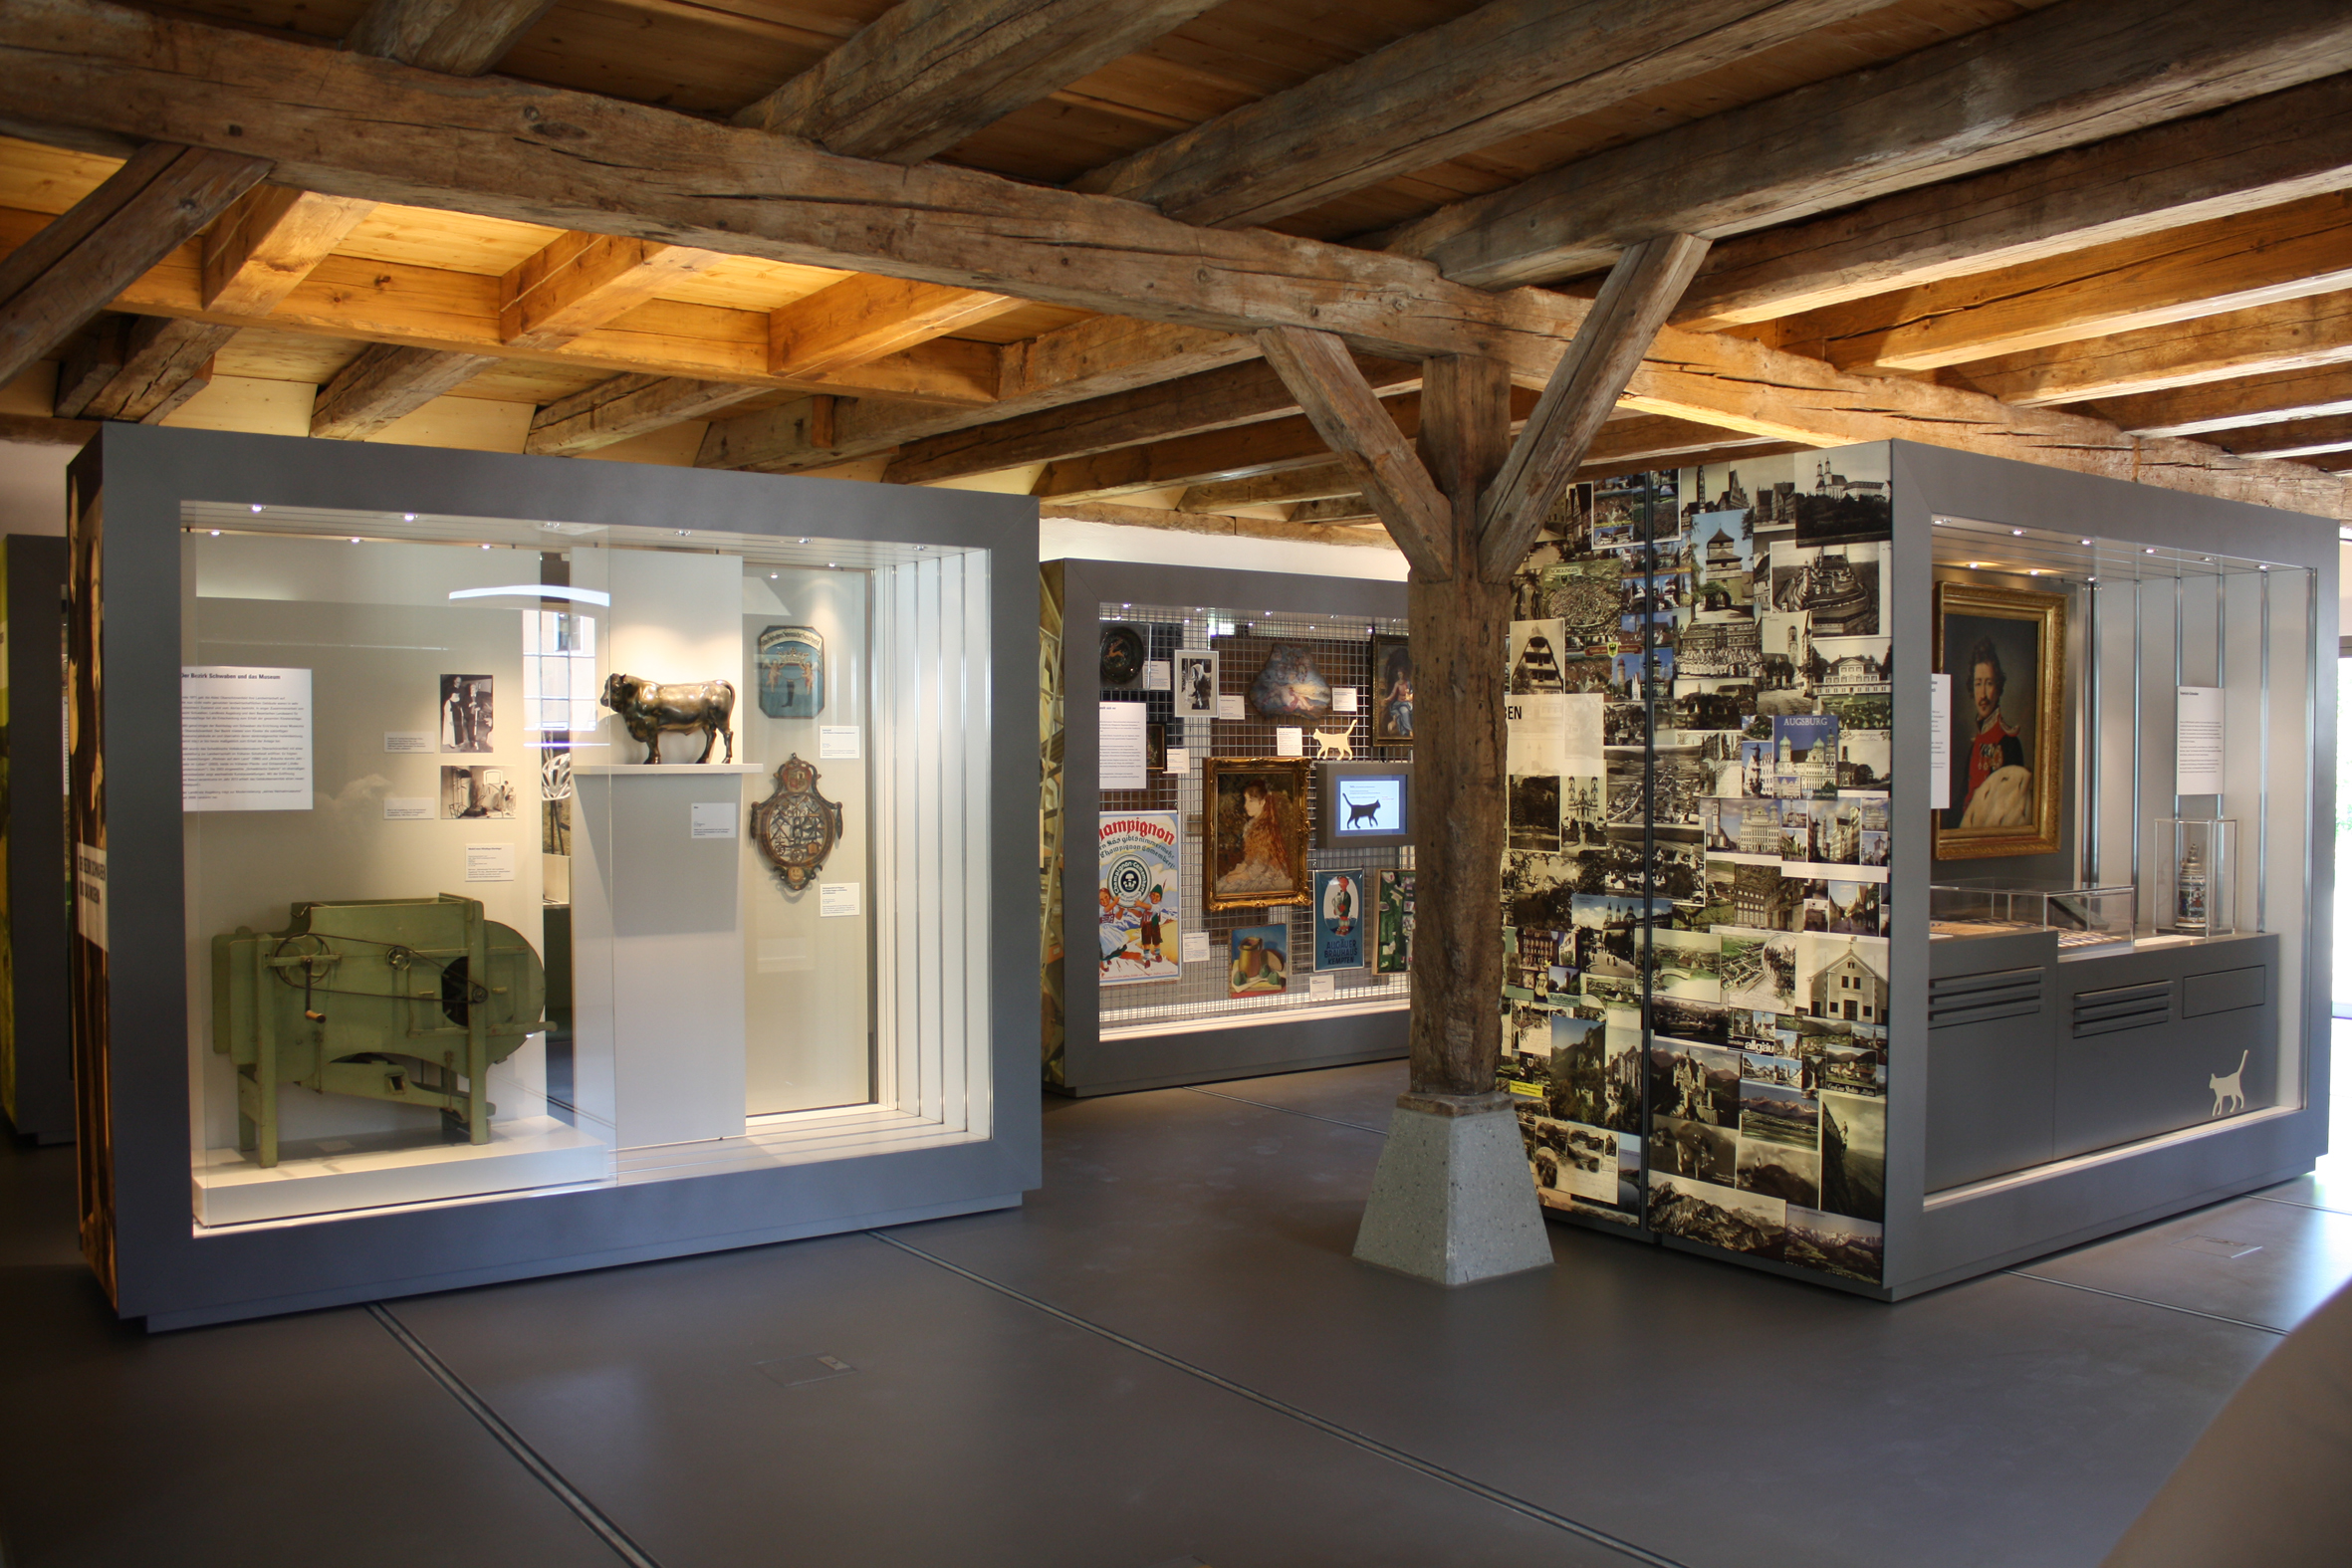 Blick in den Ausstellungsbereich im Besucherzentrum des Museums Oberschönenfeld